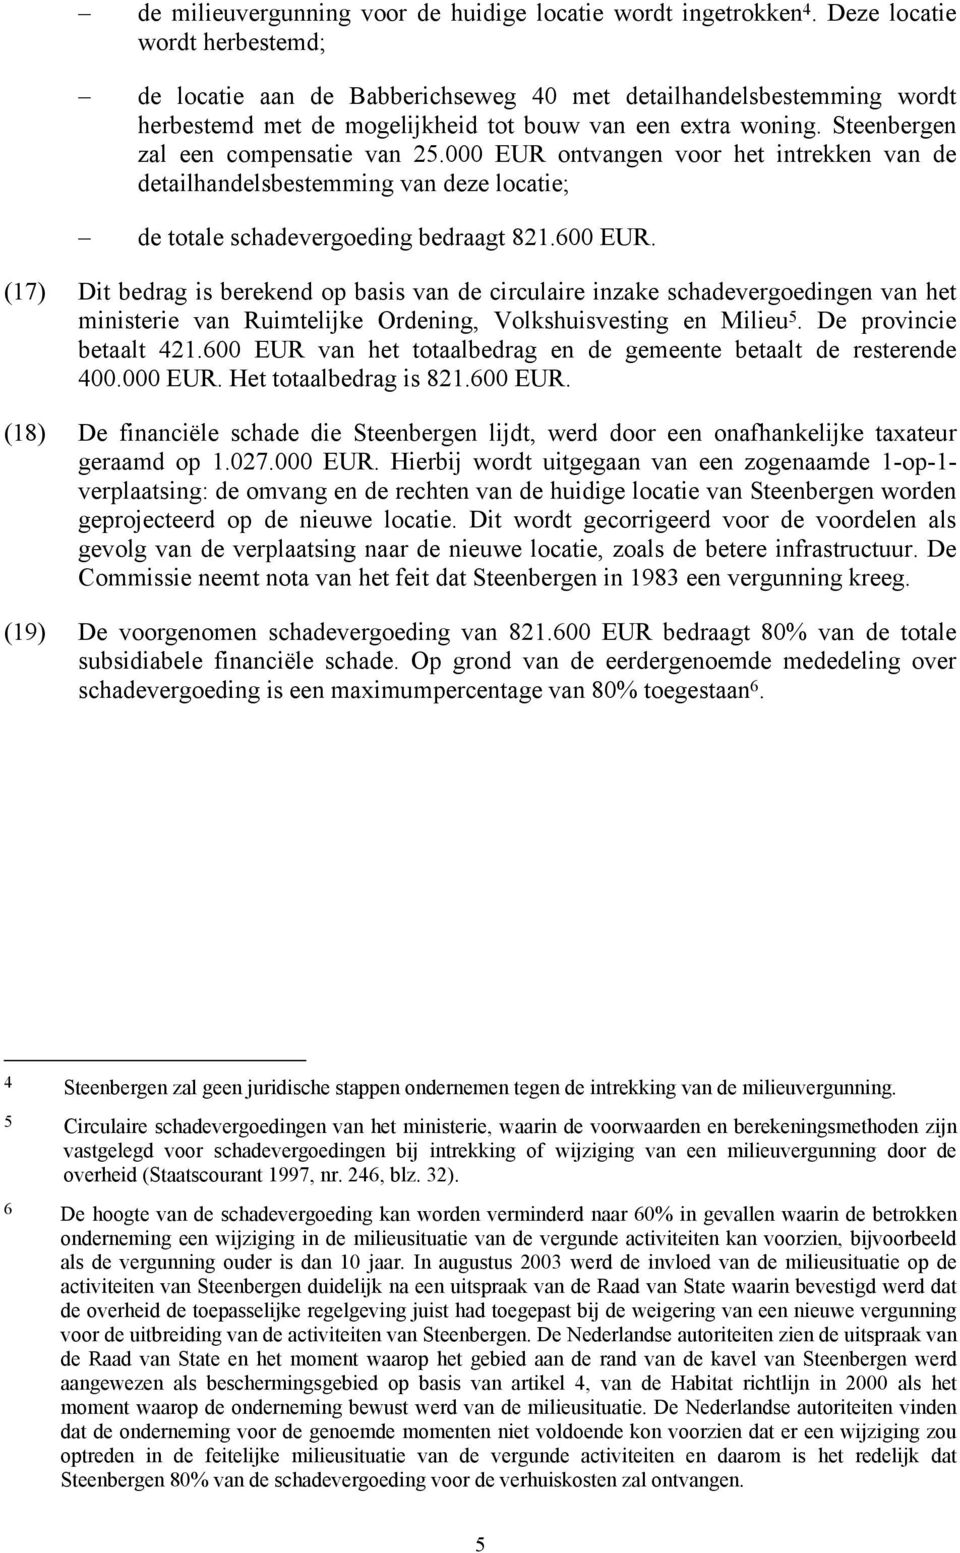 Steenbergen zal een compensatie van 25.000 EUR ontvangen voor het intrekken van de detailhandelsbestemming van deze locatie; de totale schadevergoeding bedraagt 821.600 EUR.